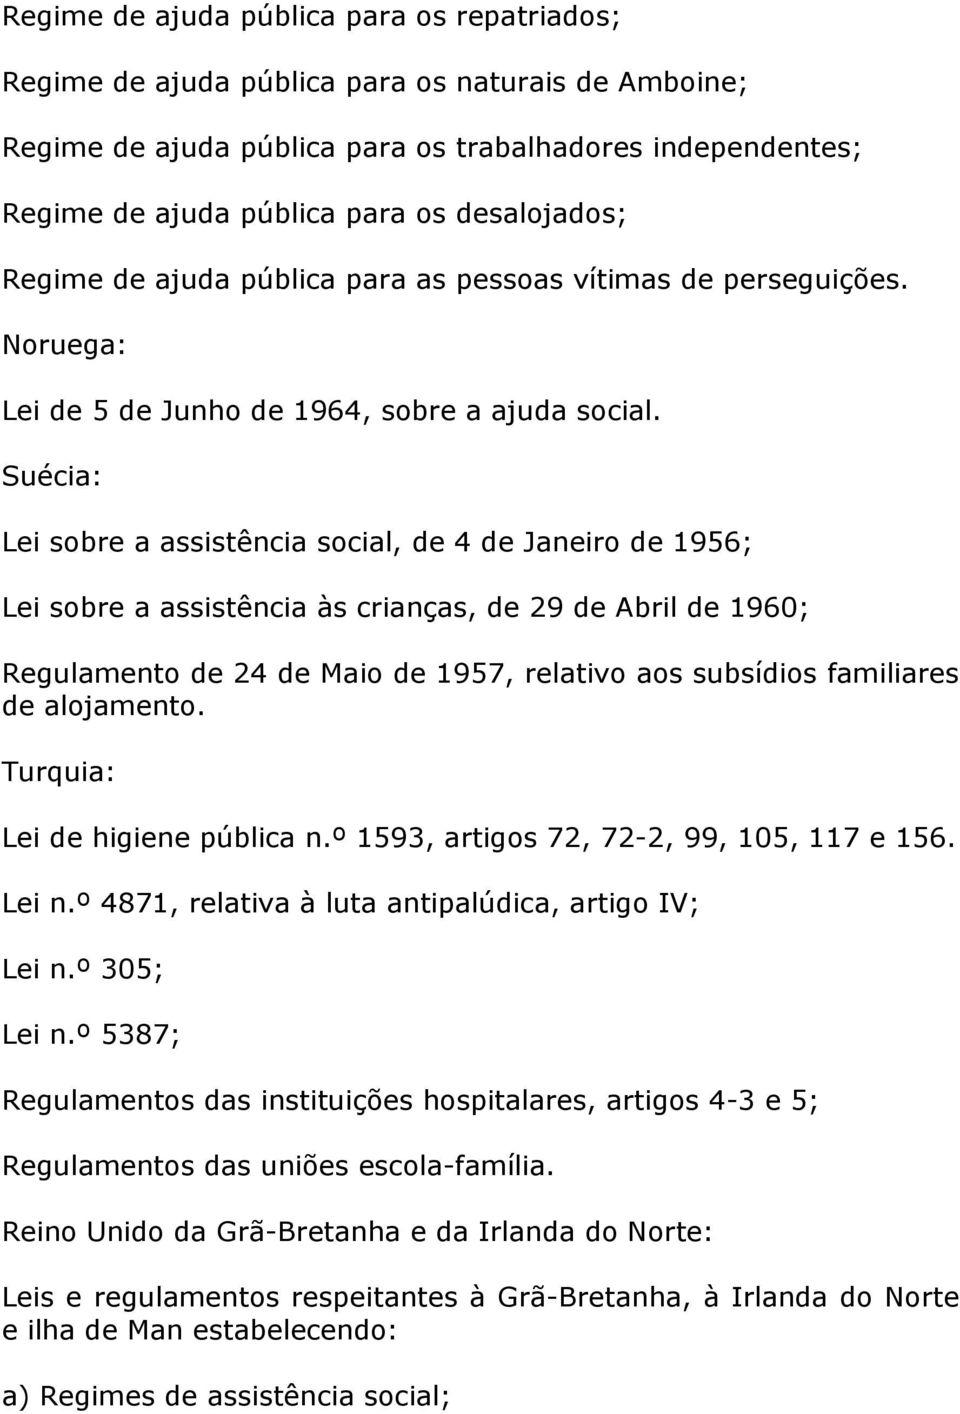 Suécia: Lei sobre a assistência social, de 4 de Janeiro de 1956; Lei sobre a assistência às crianças, de 29 de Abril de 1960; Regulamento de 24 de Maio de 1957, relativo aos subsídios familiares de